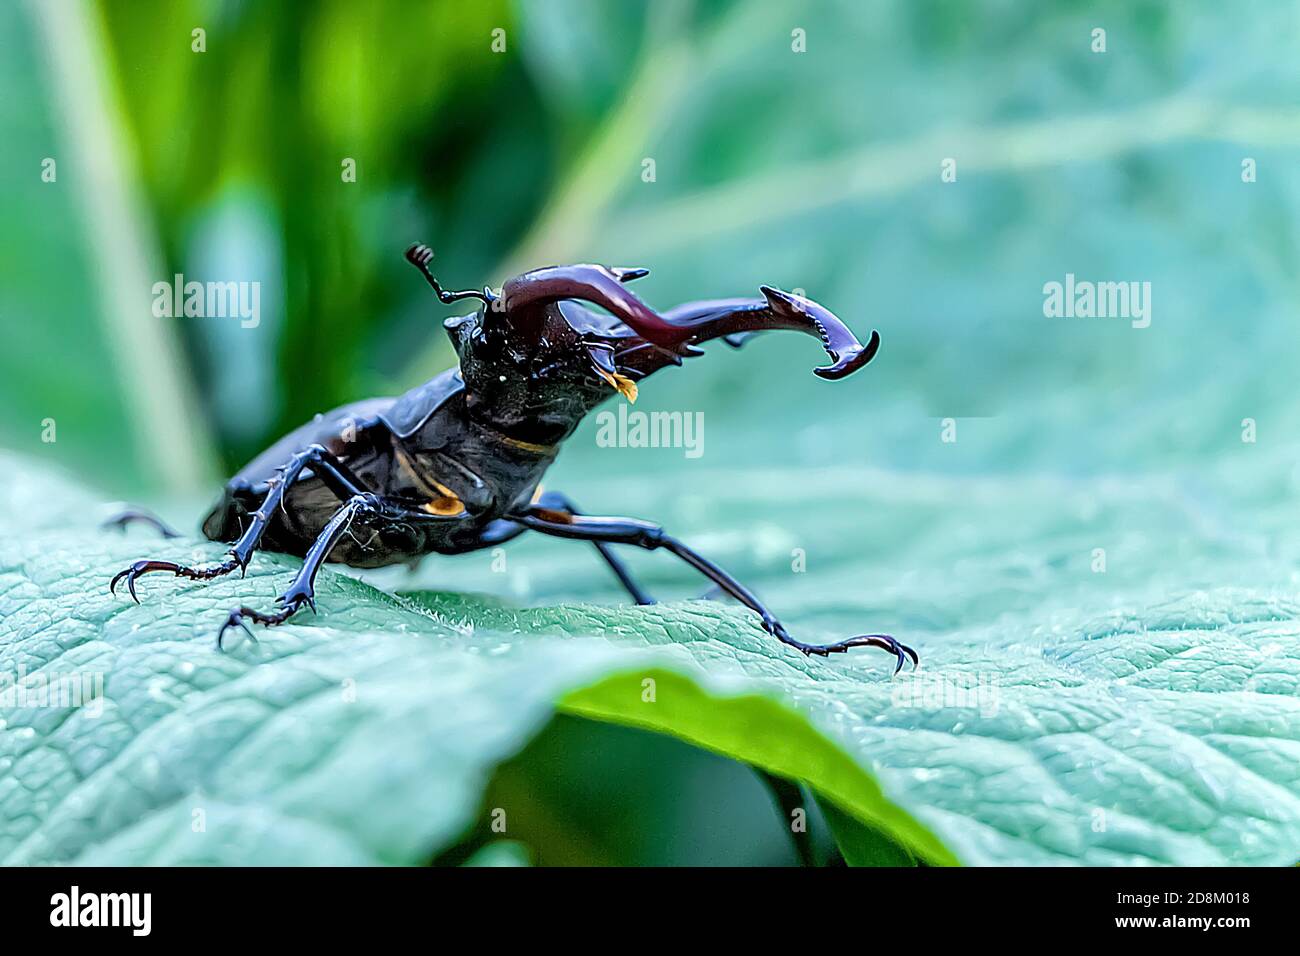 Un escarabajo grande de ciervo (Lucanus cervus) se sienta en una hoja verde grande. Un insecto sentado en la hierba (escarabajo de ciervo). Insecto europeo raro. Foto de stock